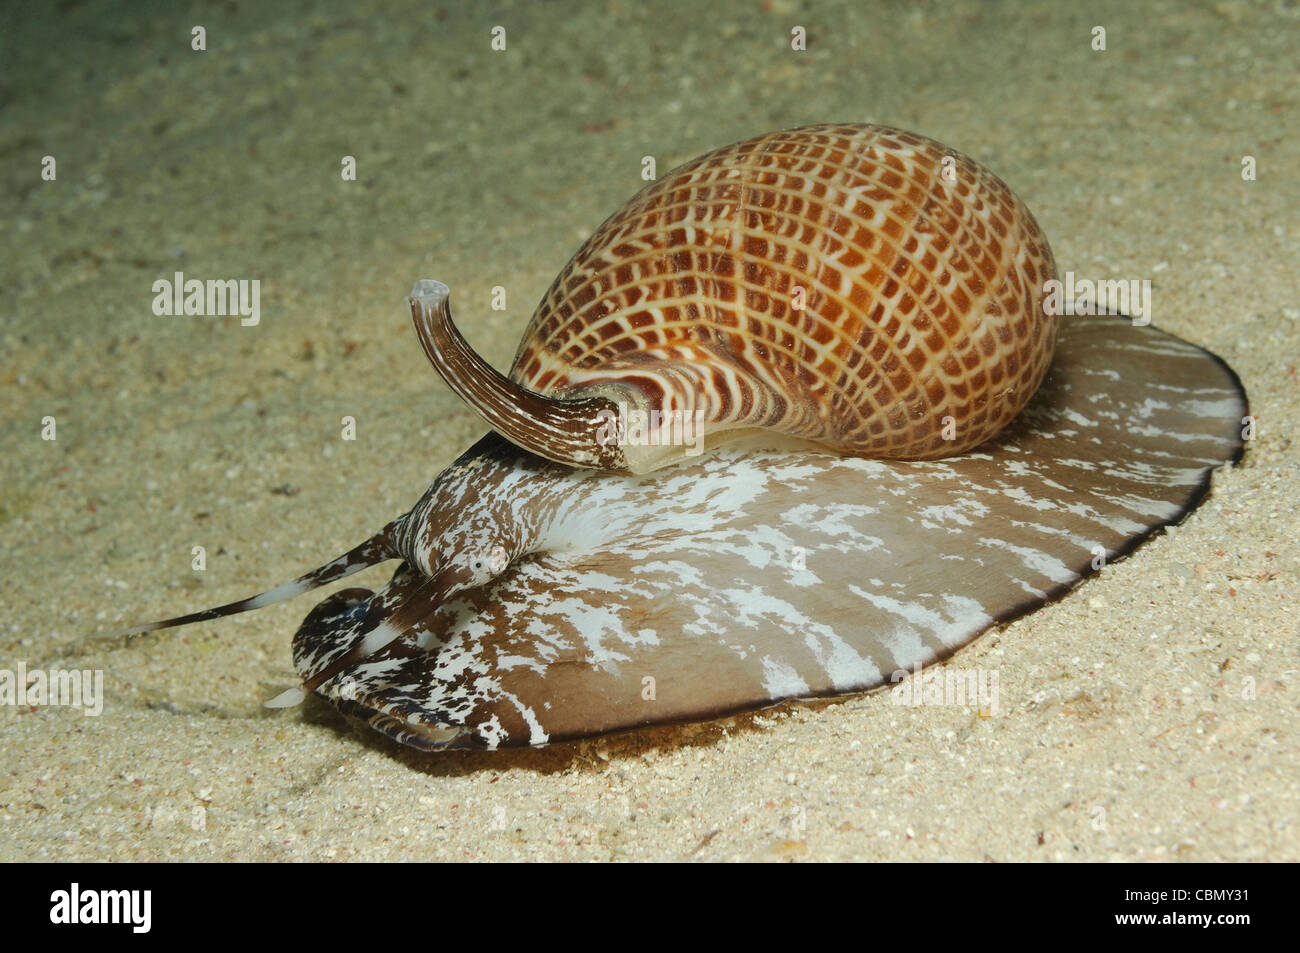 Partridge Tun Snail, Tonna perdix, Marsa Alam, Red Sea, Egypt Stock Photo